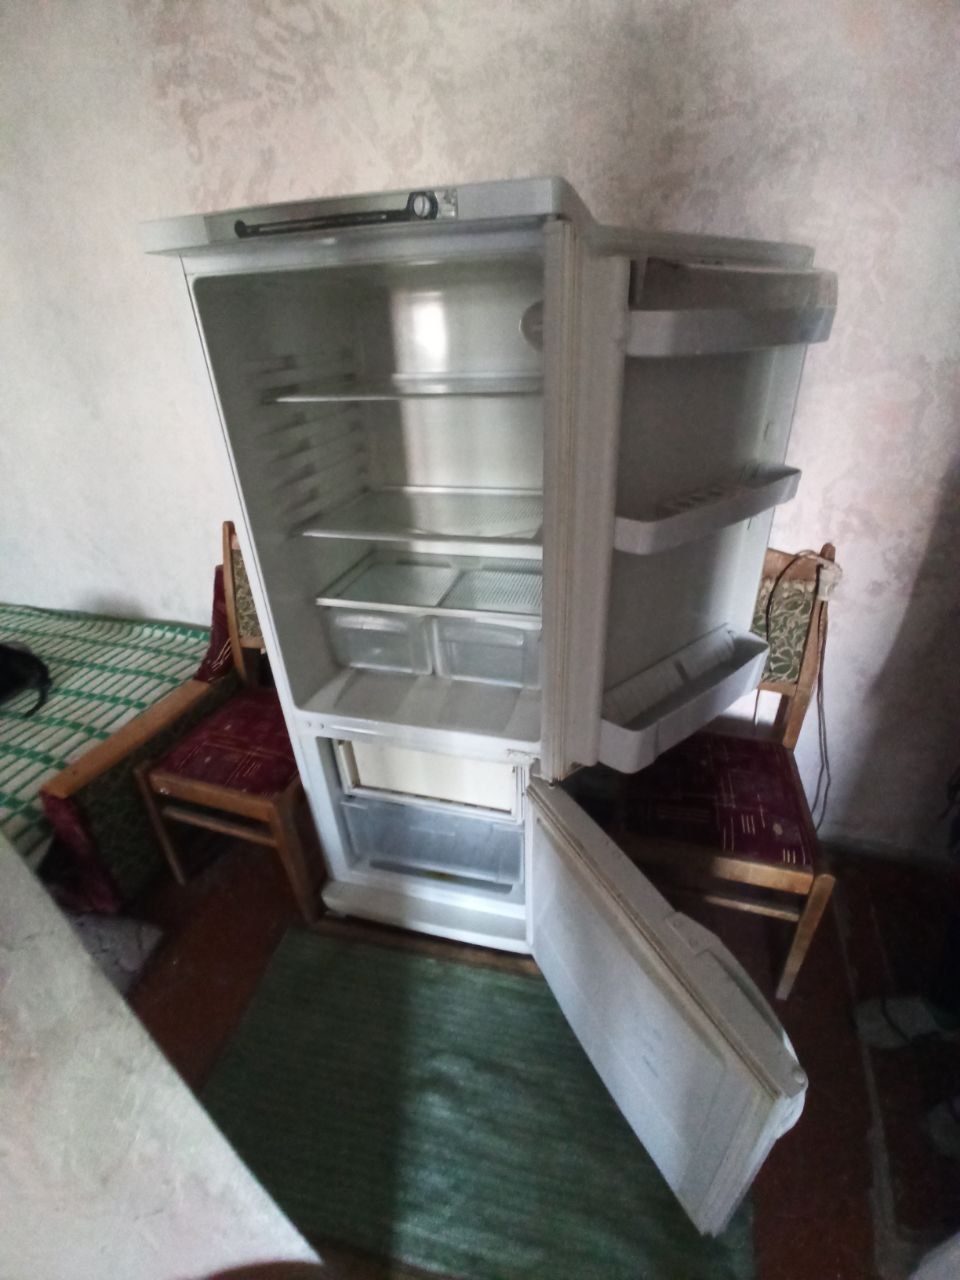 Двокамерний холодильник INDESIT SB 150-2

7 відгуків
Код:  13670

Комб